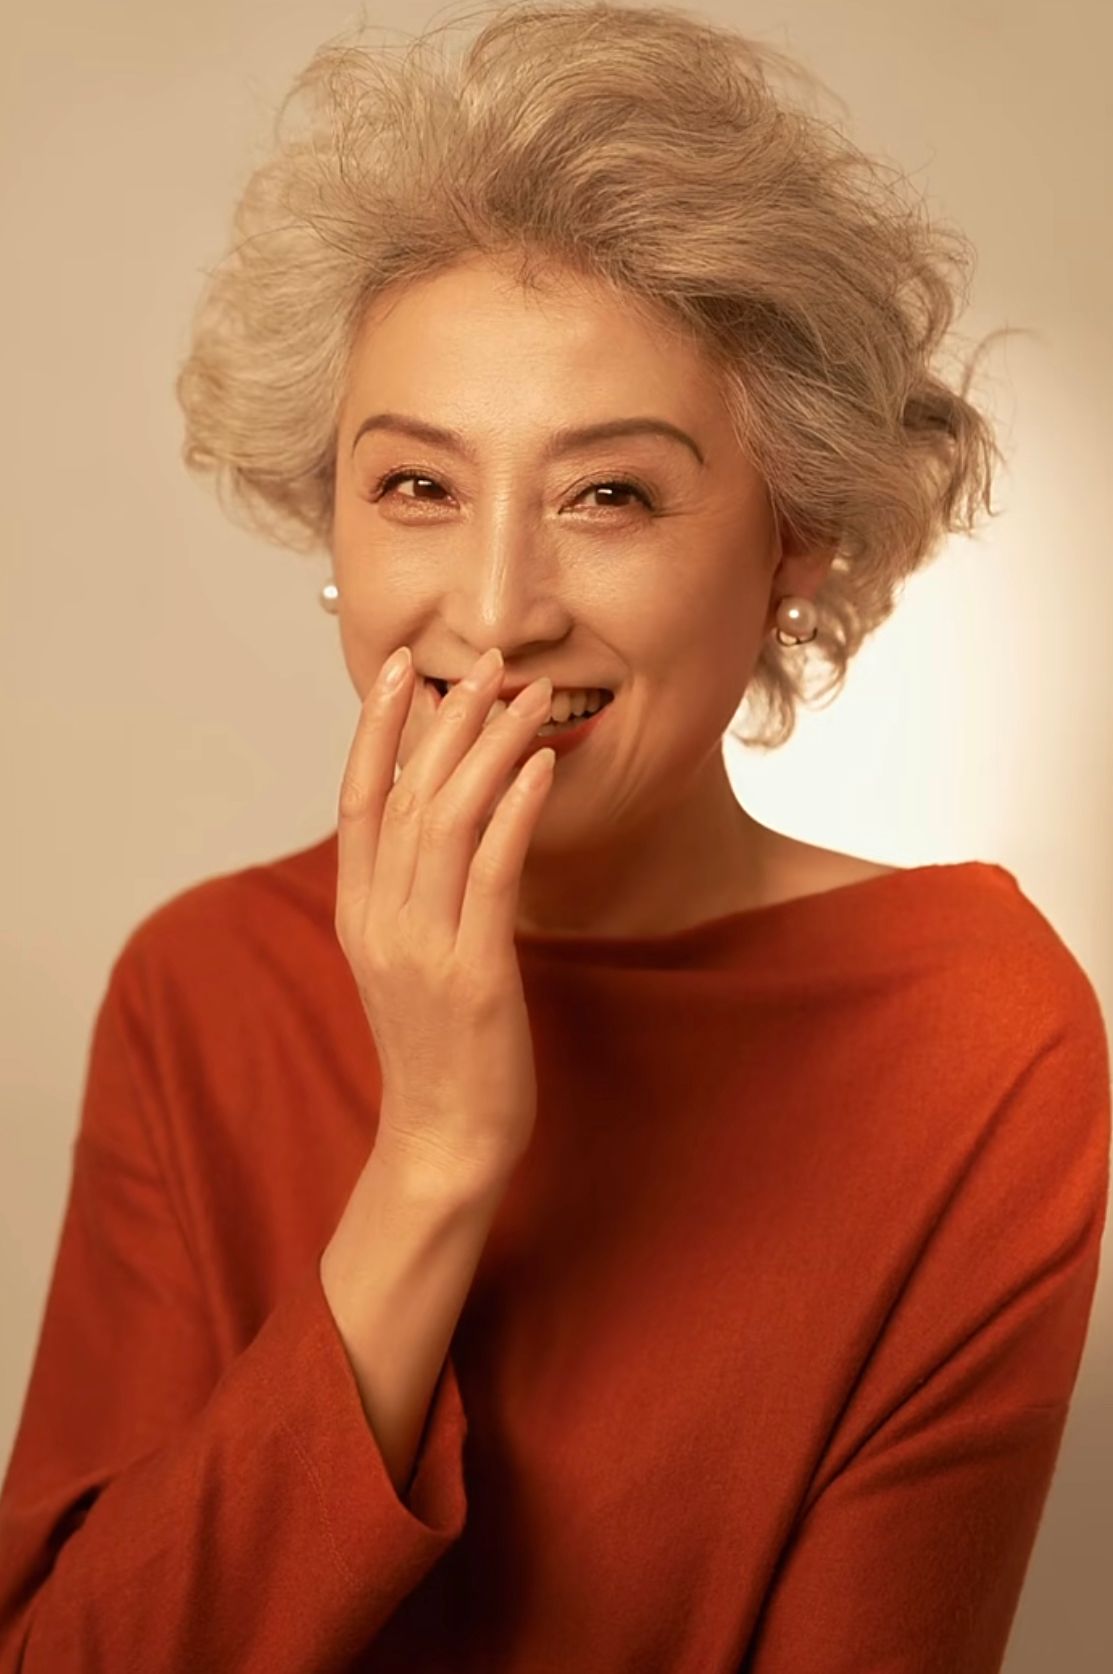 这是我见过最体面的65岁奶奶:白发微卷,仪态端庄,真正优雅老去